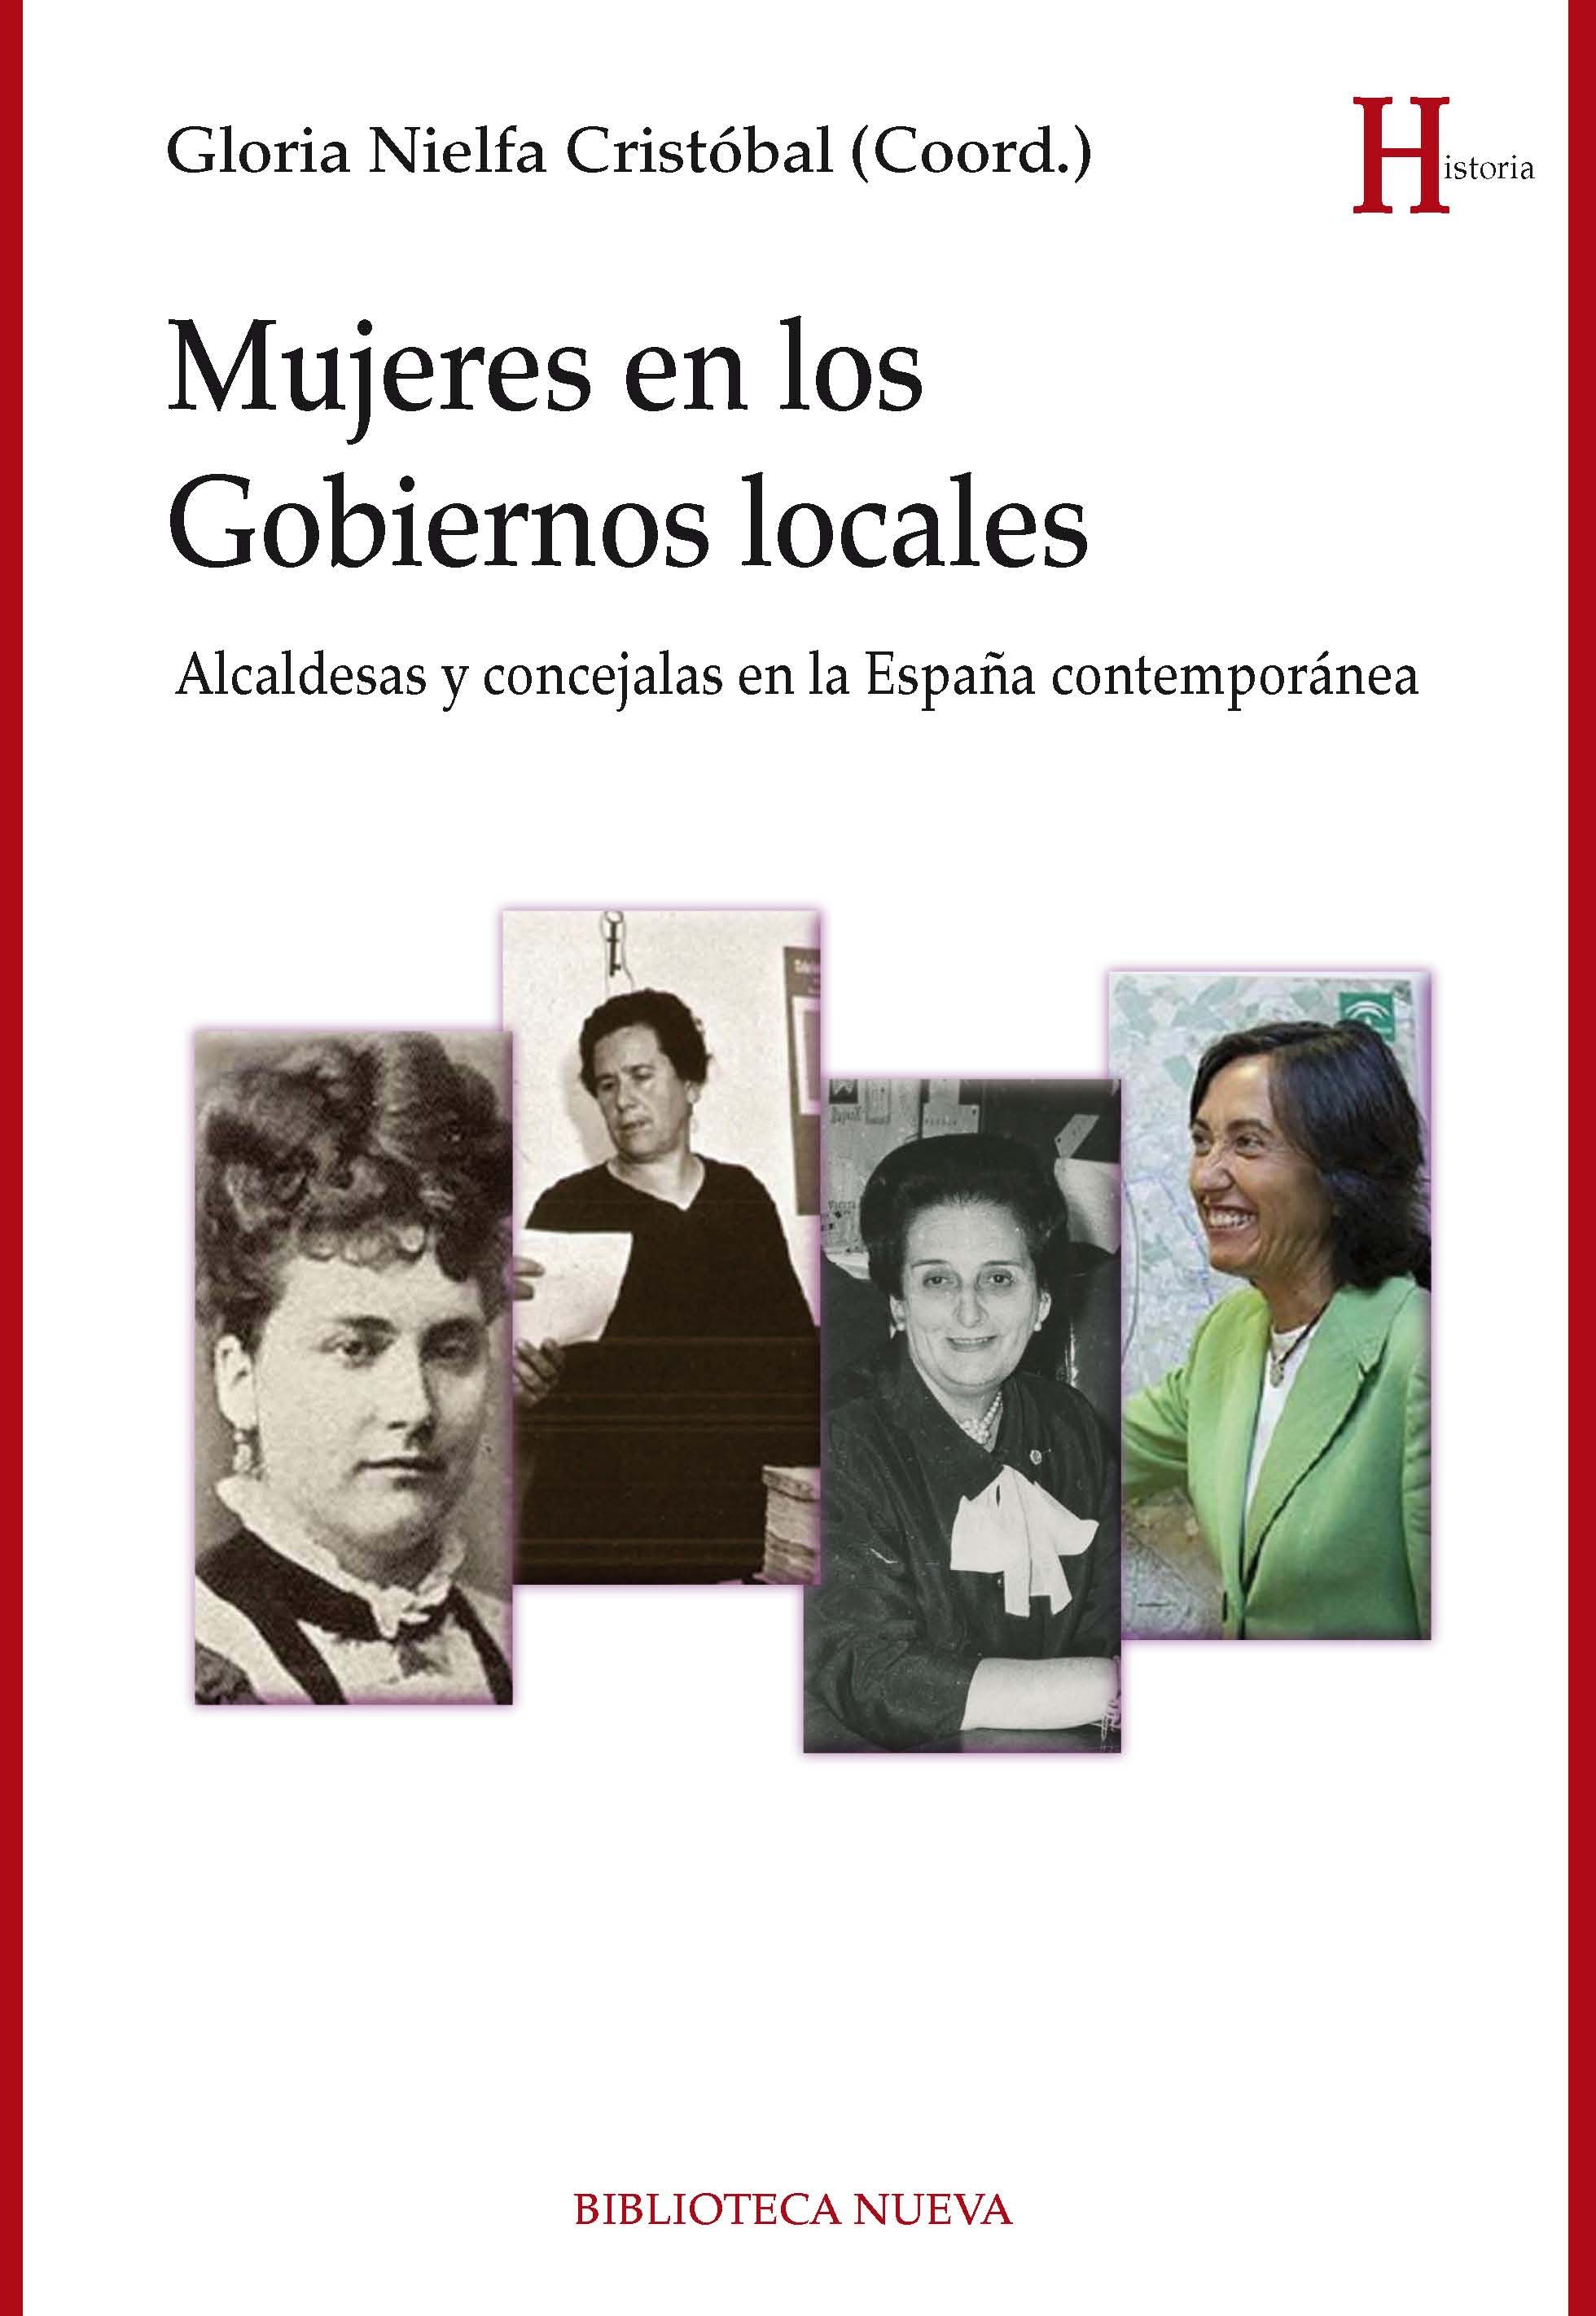 Imagen de portada del libro Mujeres en los gobiernos locales